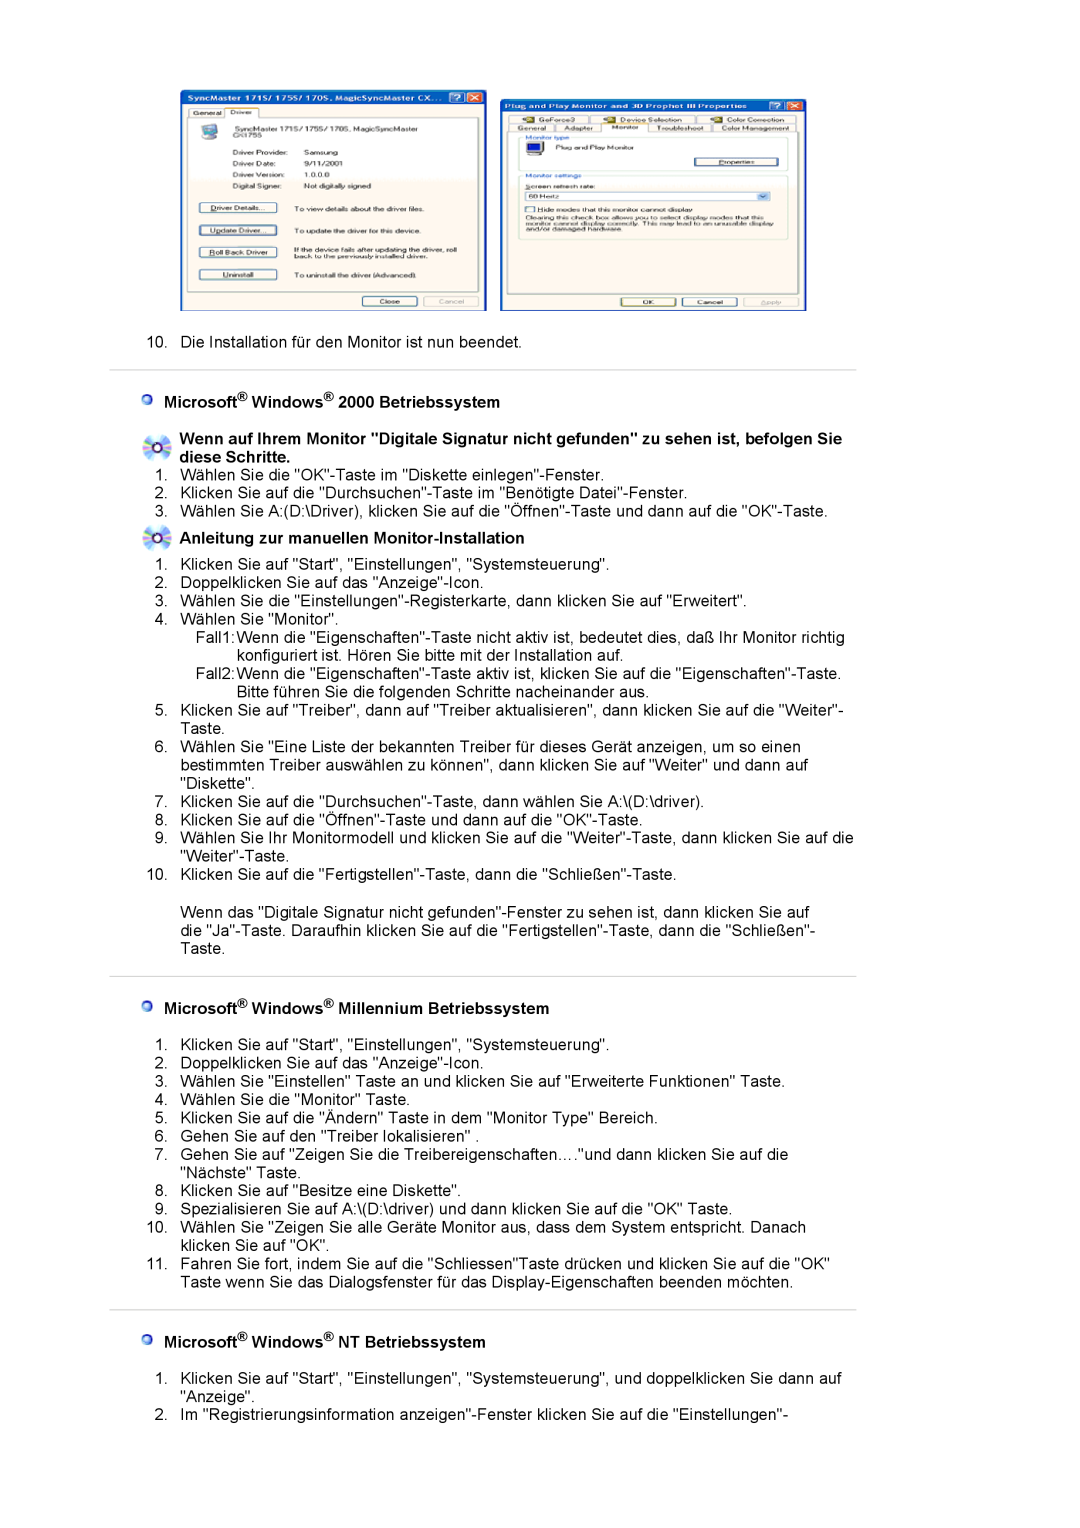 Samsung LS19HAWCSQ/EDC, LS19HAWCSH/EDC Microsoft Windows 2000 Betriebssystem, Anleitung zur manuellen Monitor-Installation 